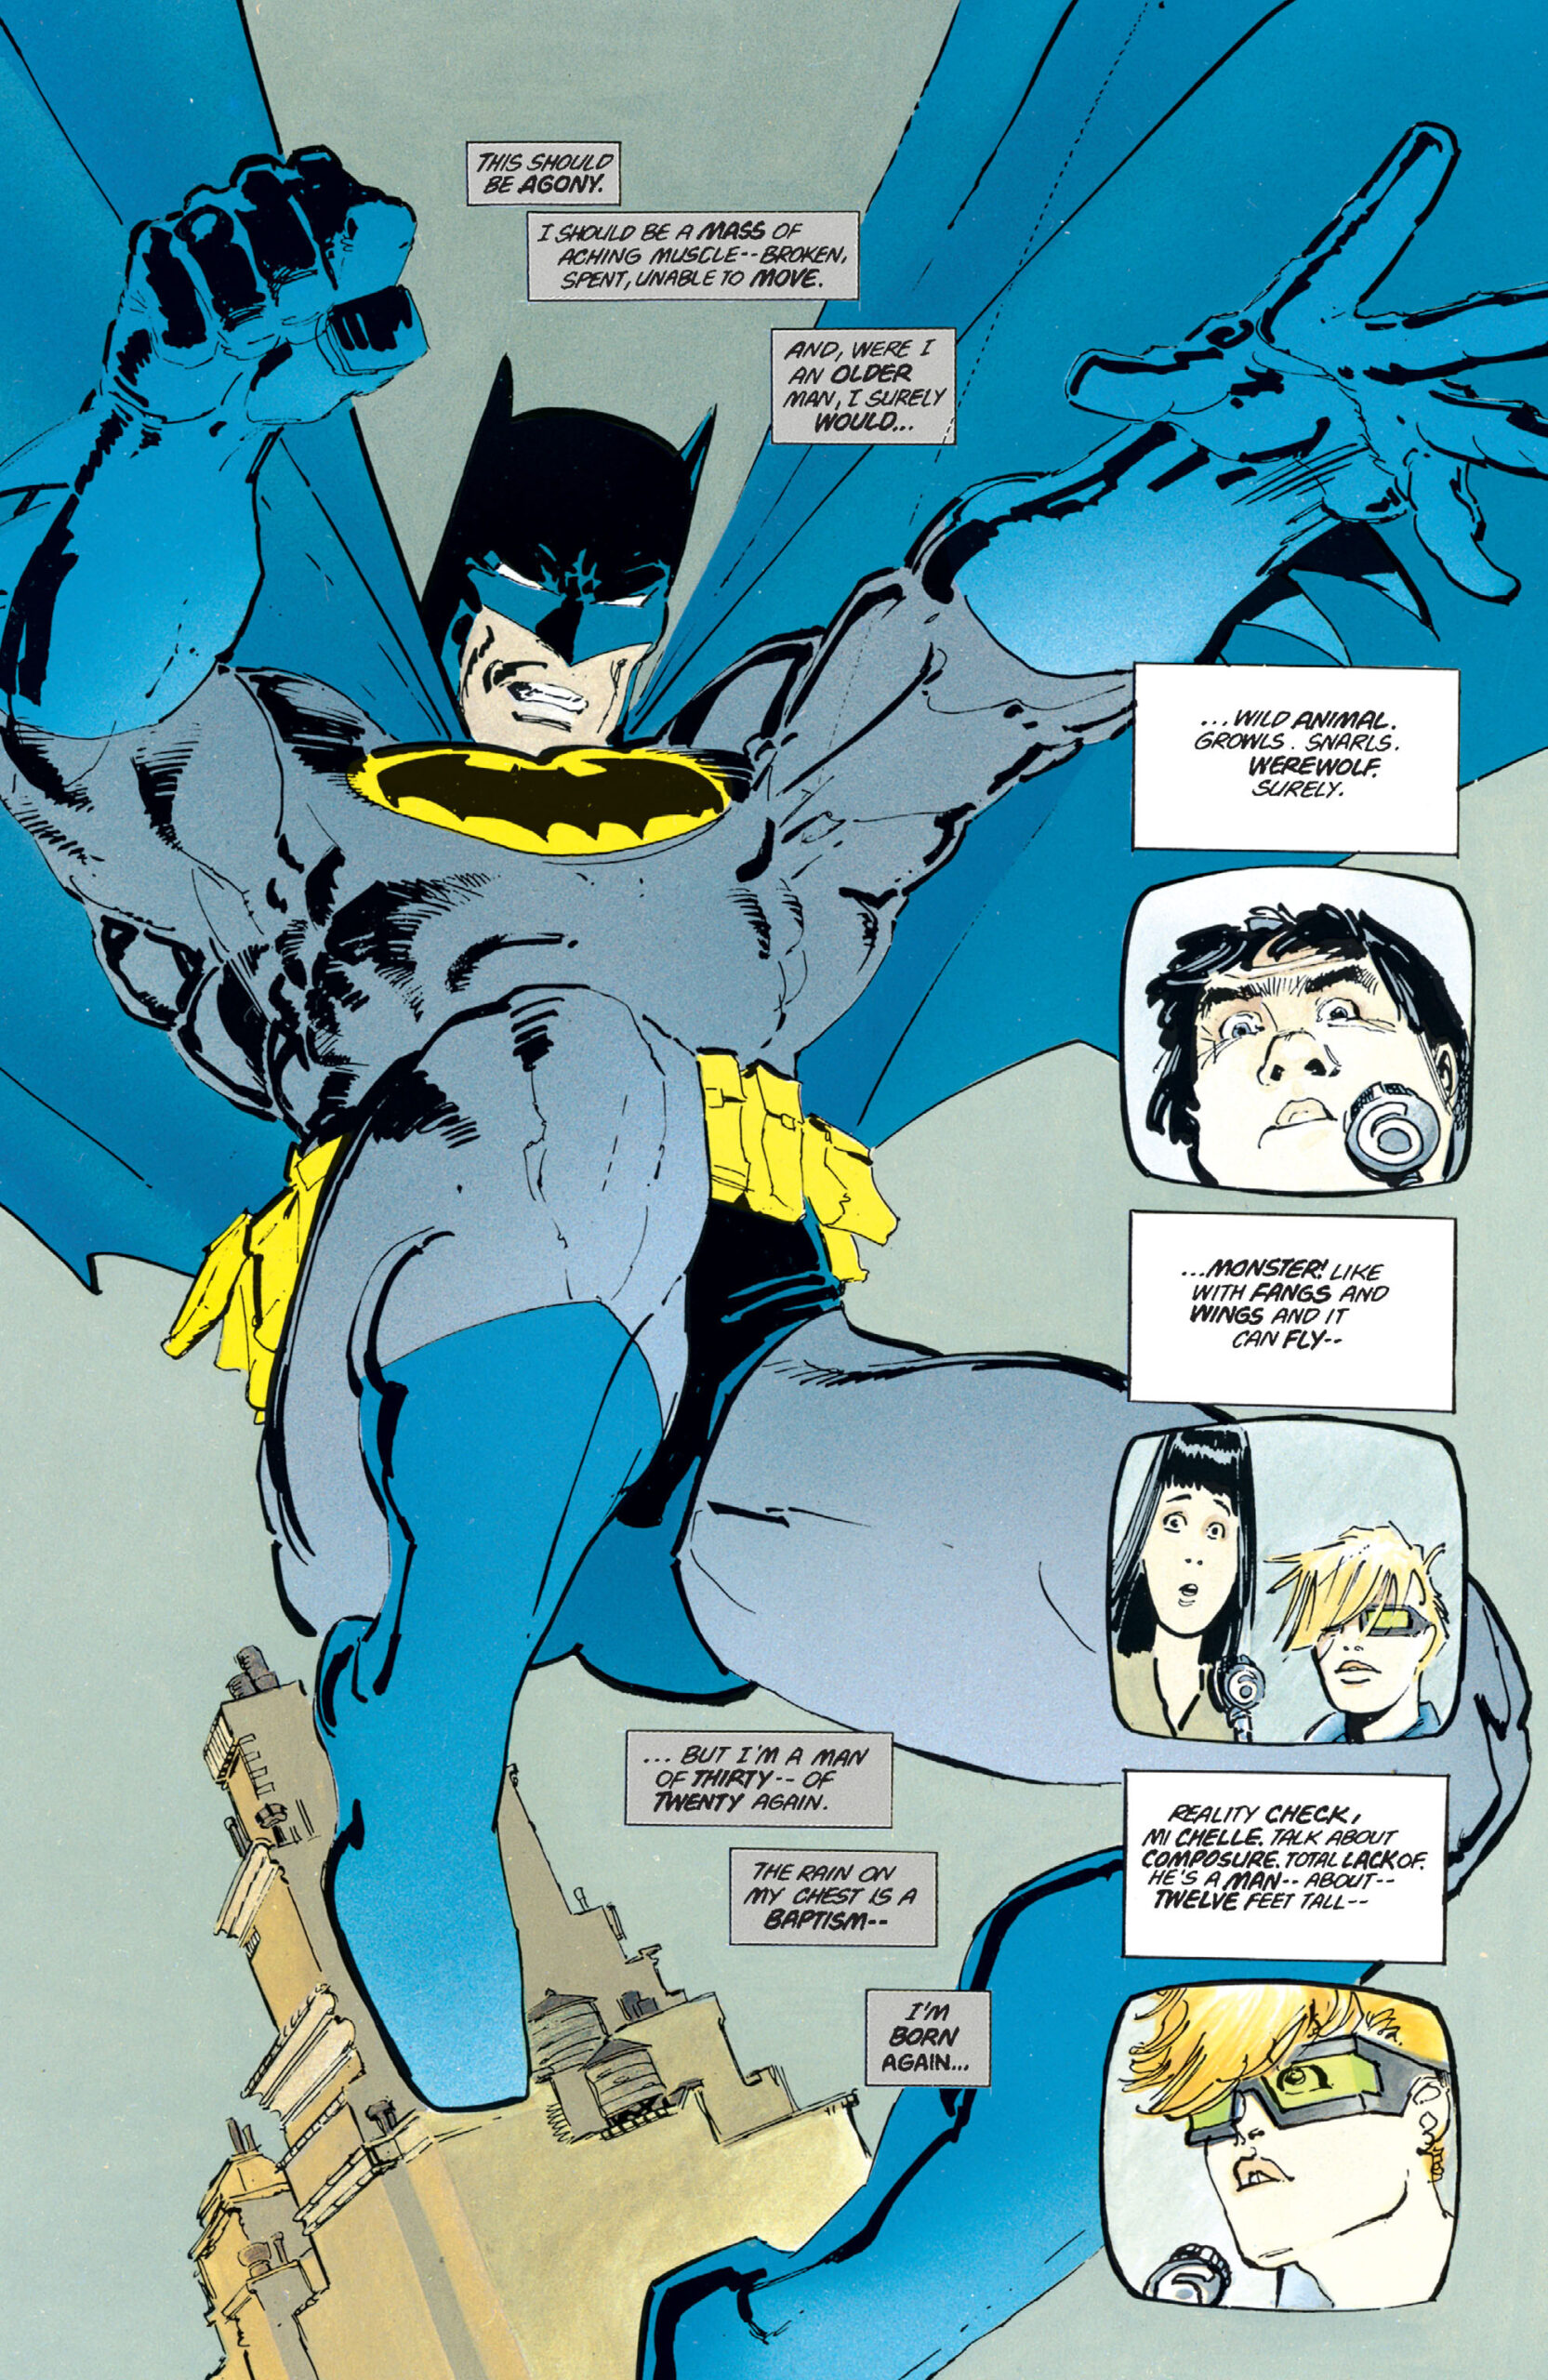 Batman cavalga mais uma vez em Batman: The Dark Knight Returns Vol. 1 #1 “O Retorno do Cavaleiro das Trevas” (1986), DC Comics. Palavras e arte de Frank Miller.